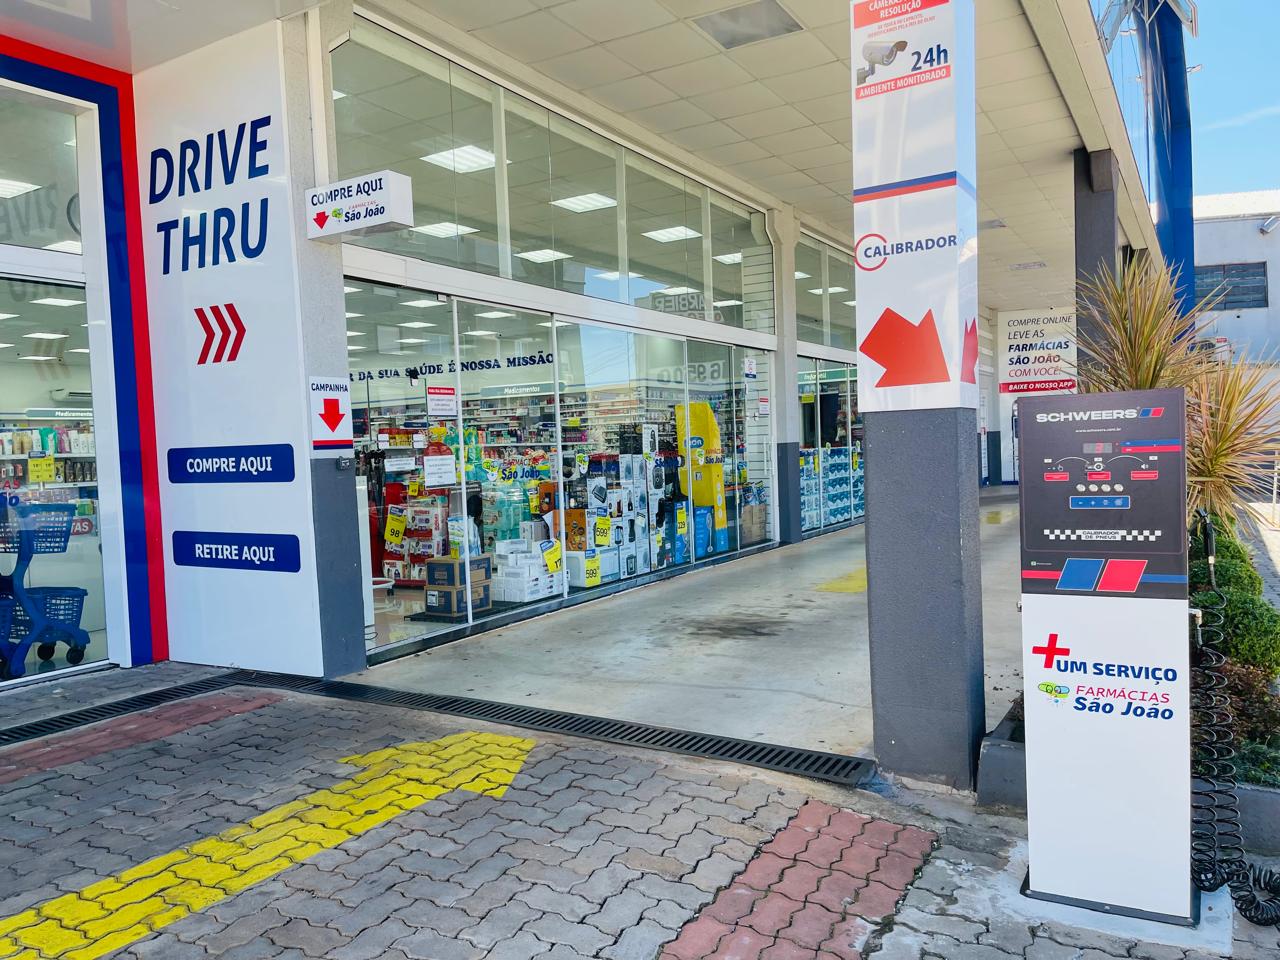 Calibradores de pneus começam a ser instalados nas farmácias São João